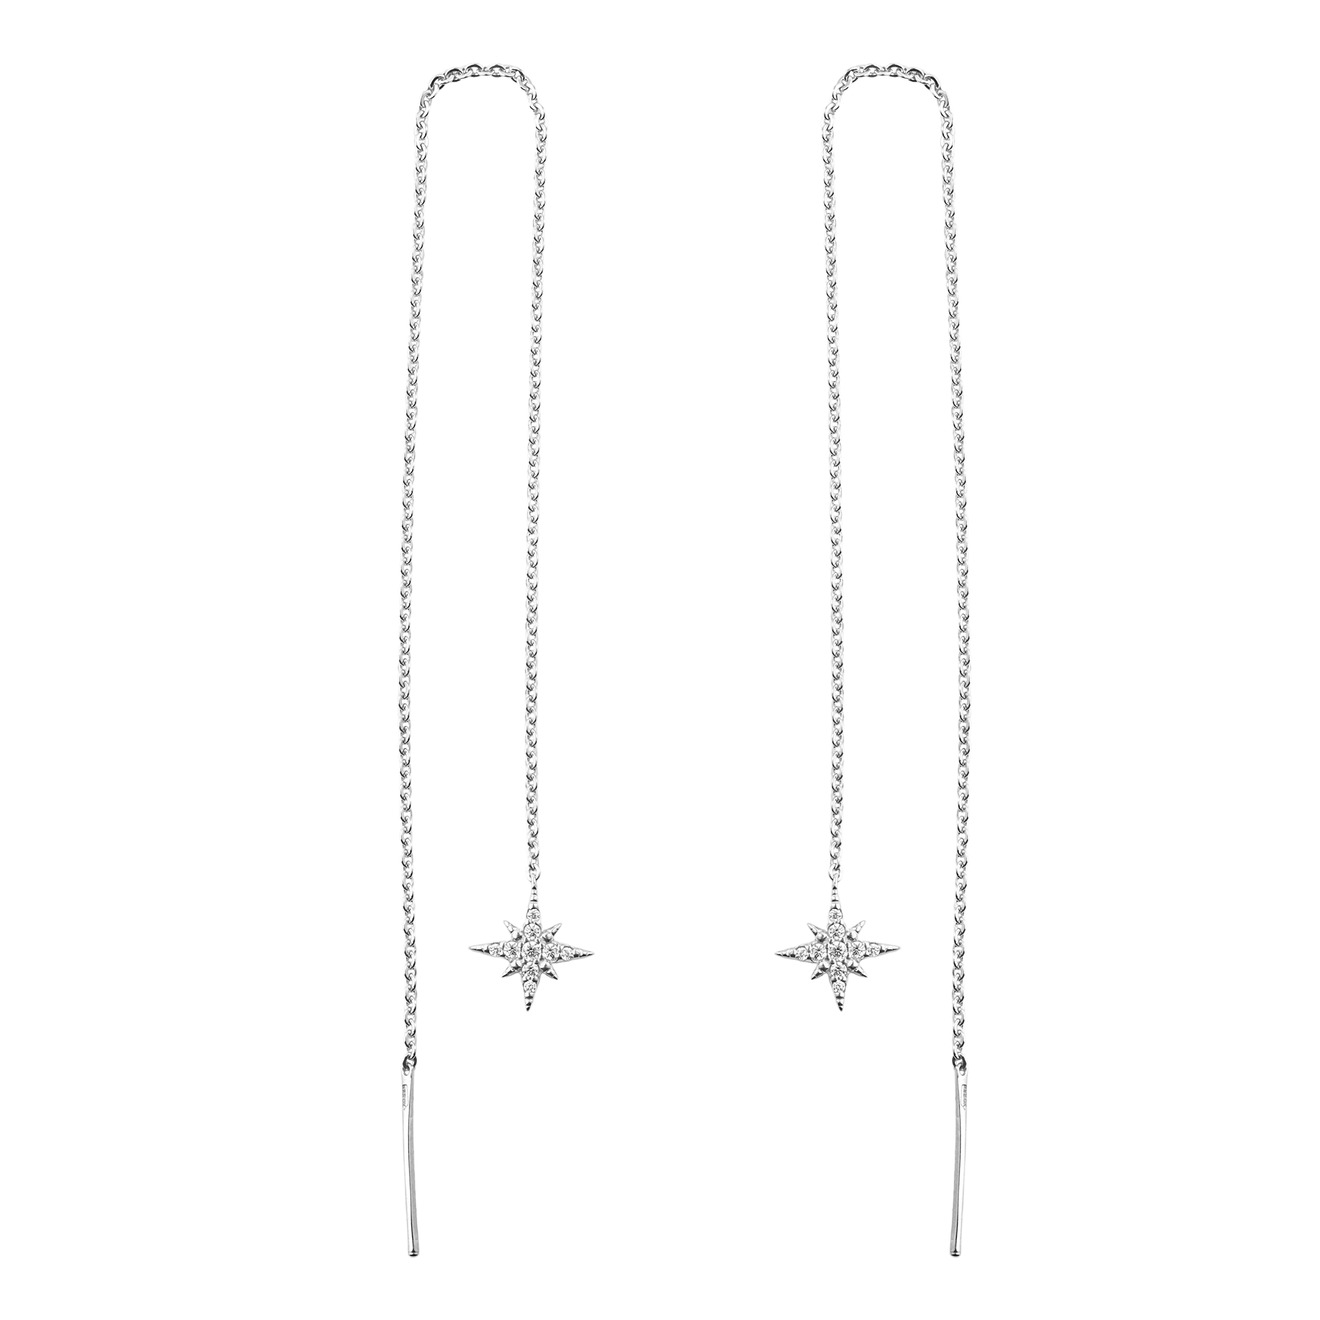 SKYE Серебряные серьги-протяжки с подвеской в виде звезды skye серебряные серьги джеккеты веер